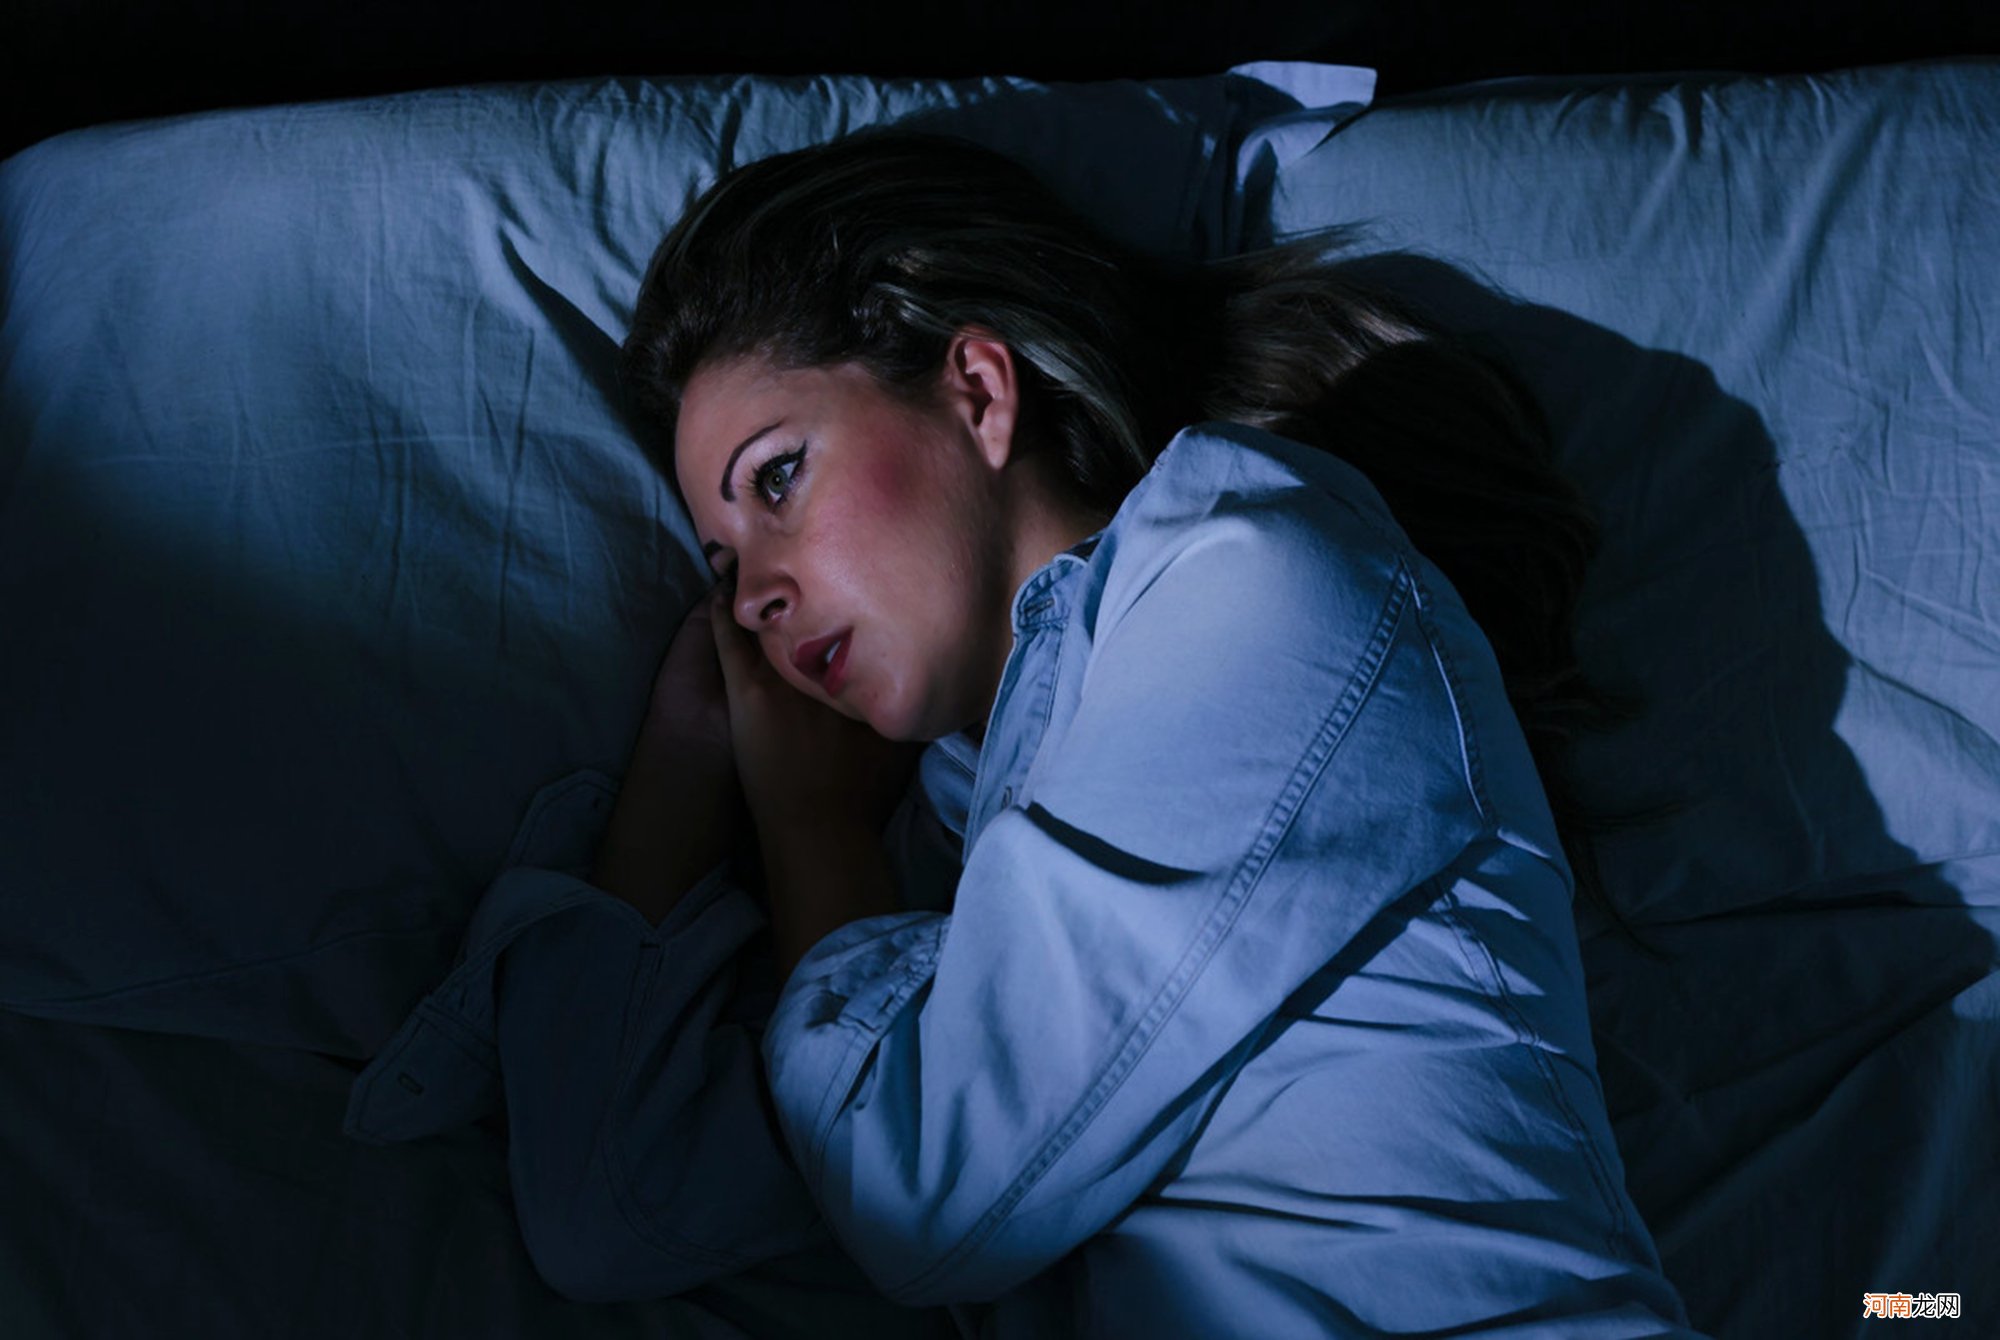 孕晚期“辗转难眠”可能诱发“脐带绕颈”，改善睡眠质量刻不容缓